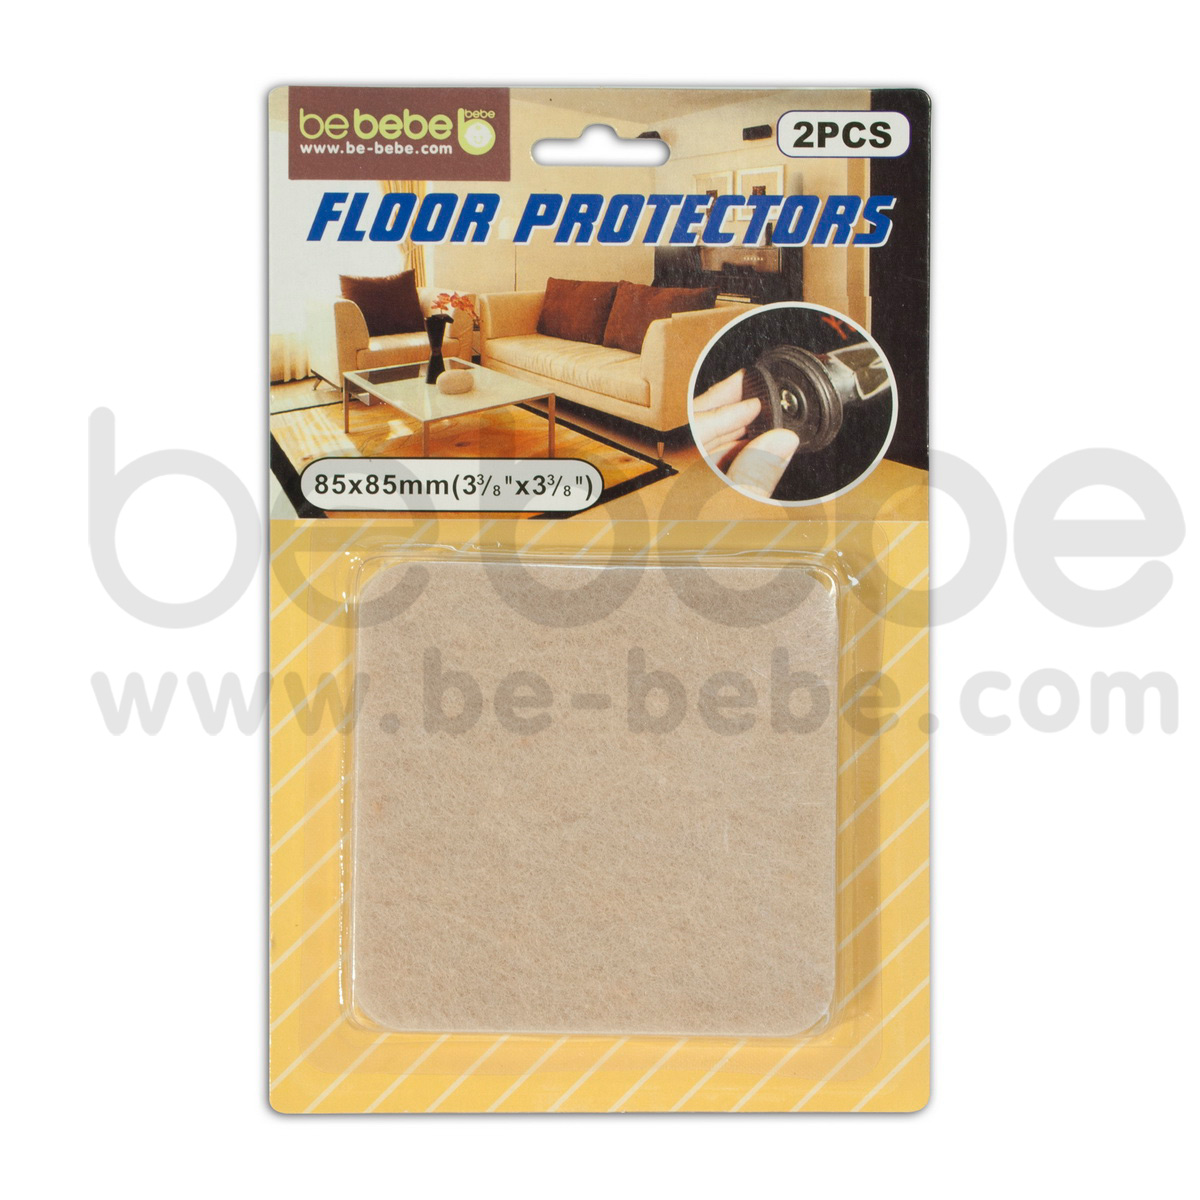 be bebe : Floor Protector /Beige 2 pcs.(85x85mm.)